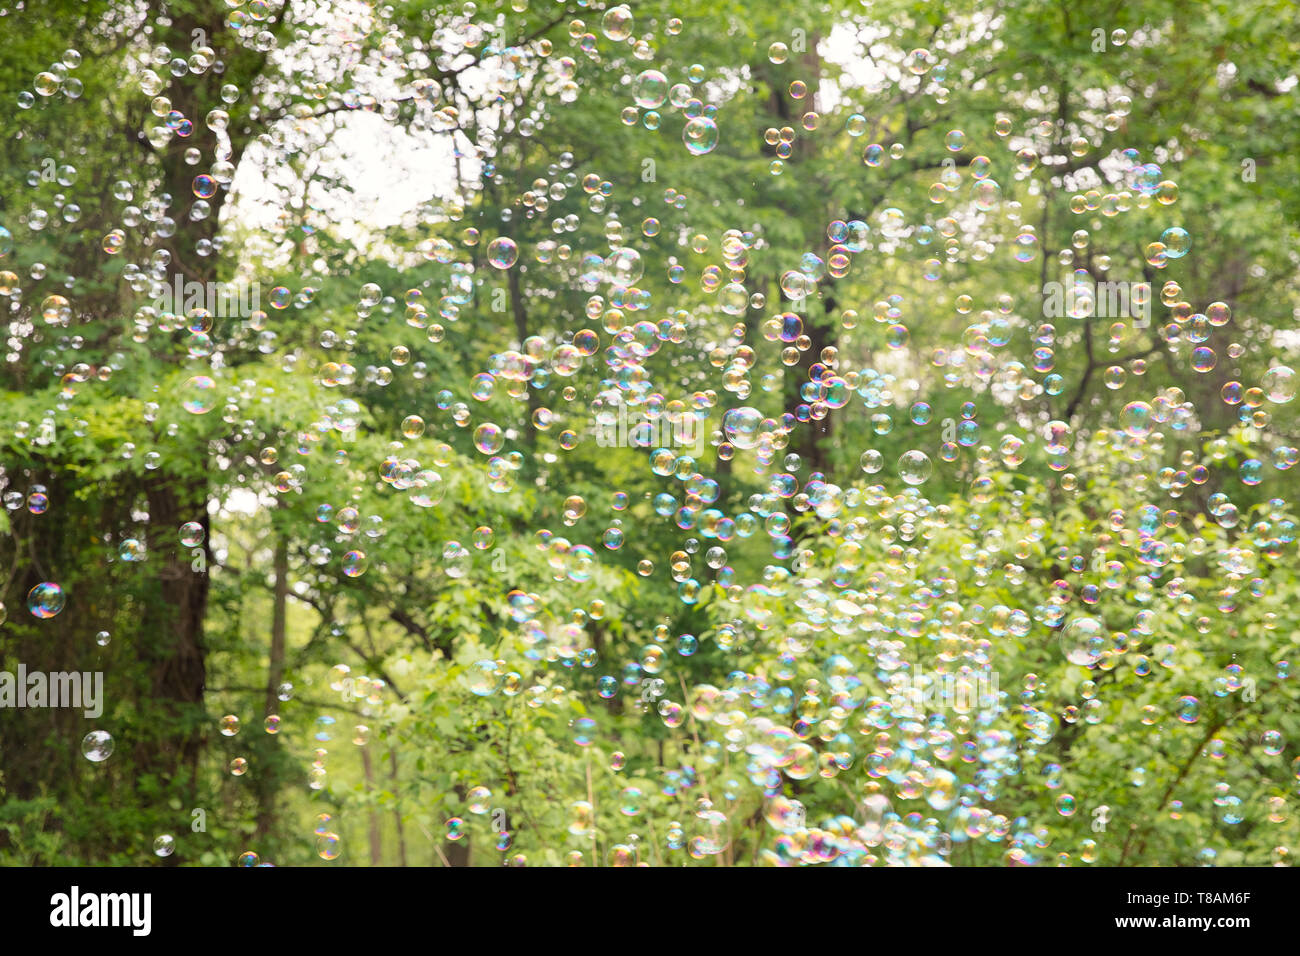 Der Regenbogen Luftblasen von Bubble blower-Image Stockfoto